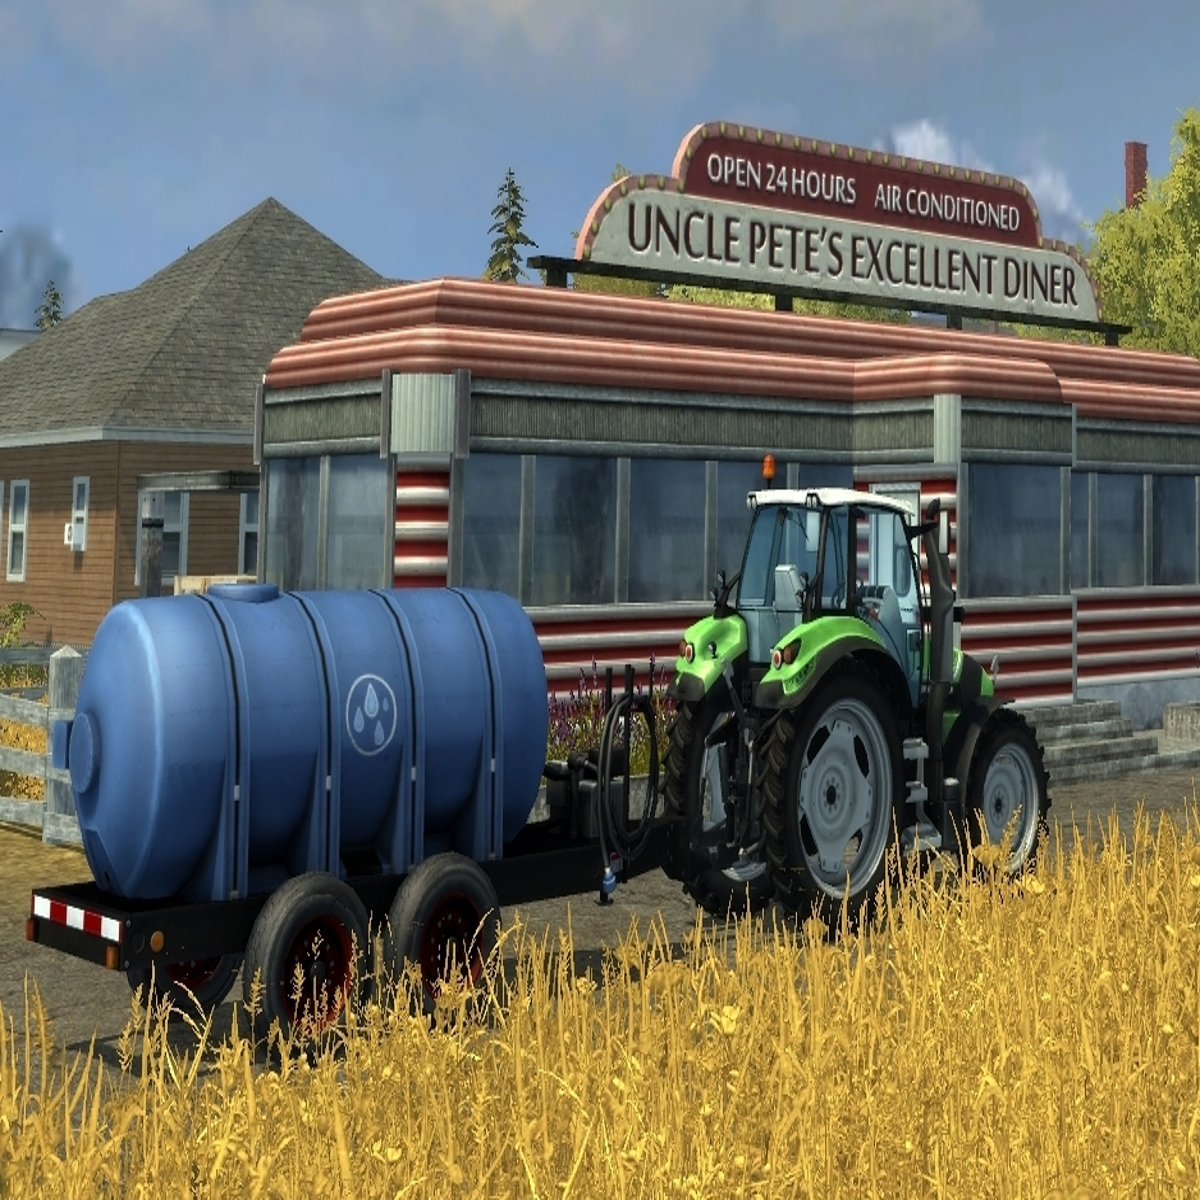 Farming Simulator chega ao PS3 e 360 - Combo Infinito